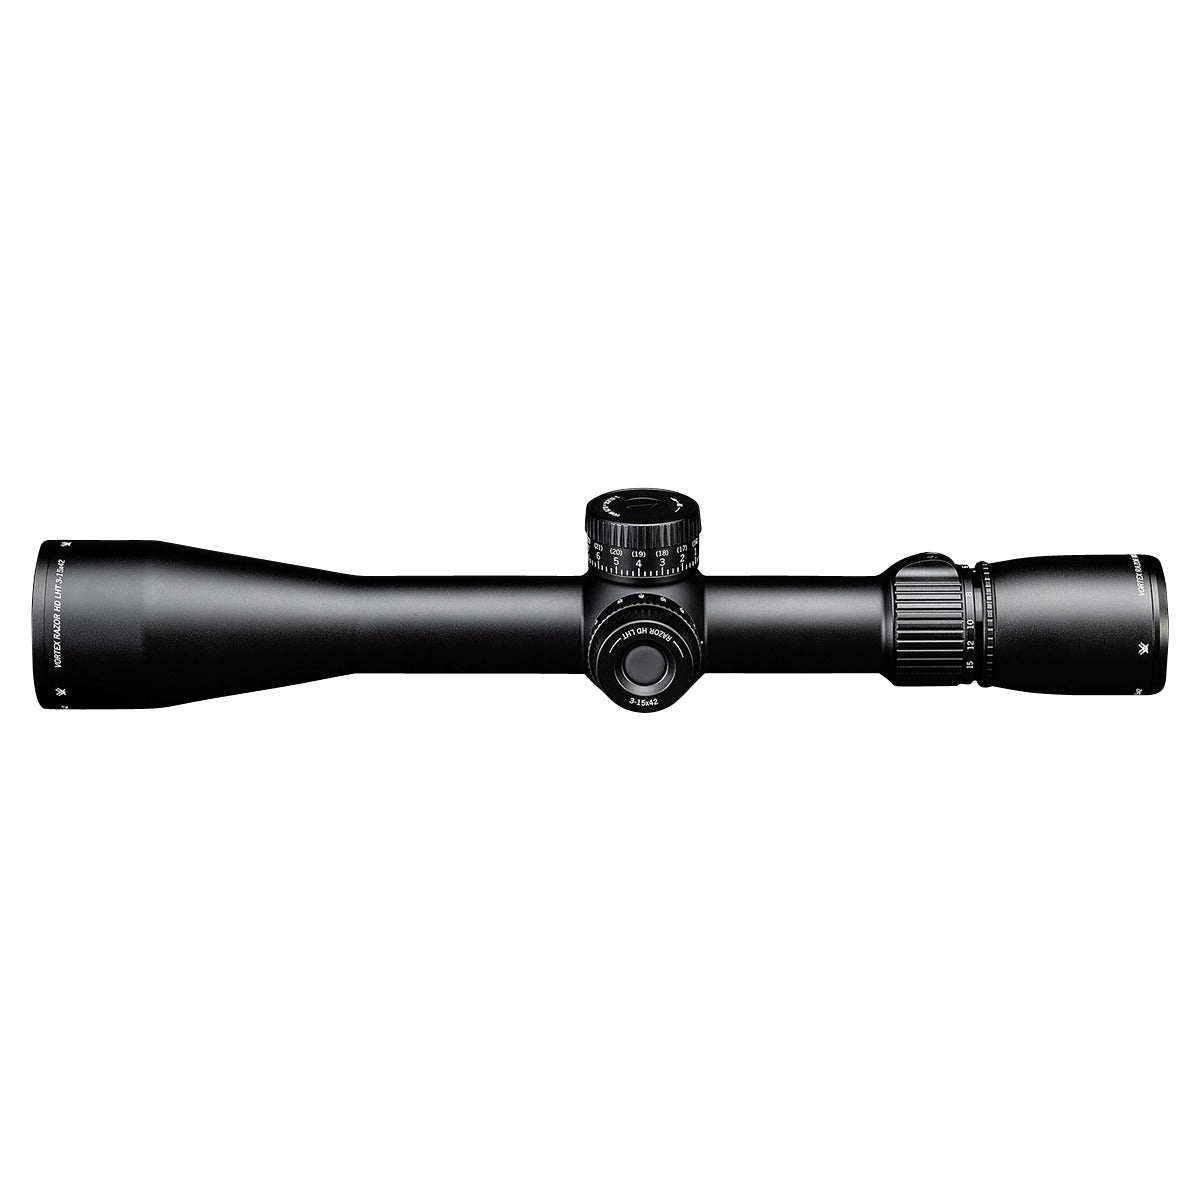 Vortex Razor LHT 3-15x42 HSR-5i MOA Riflescope by Vortex Optics | Optics - goHUNT Shop